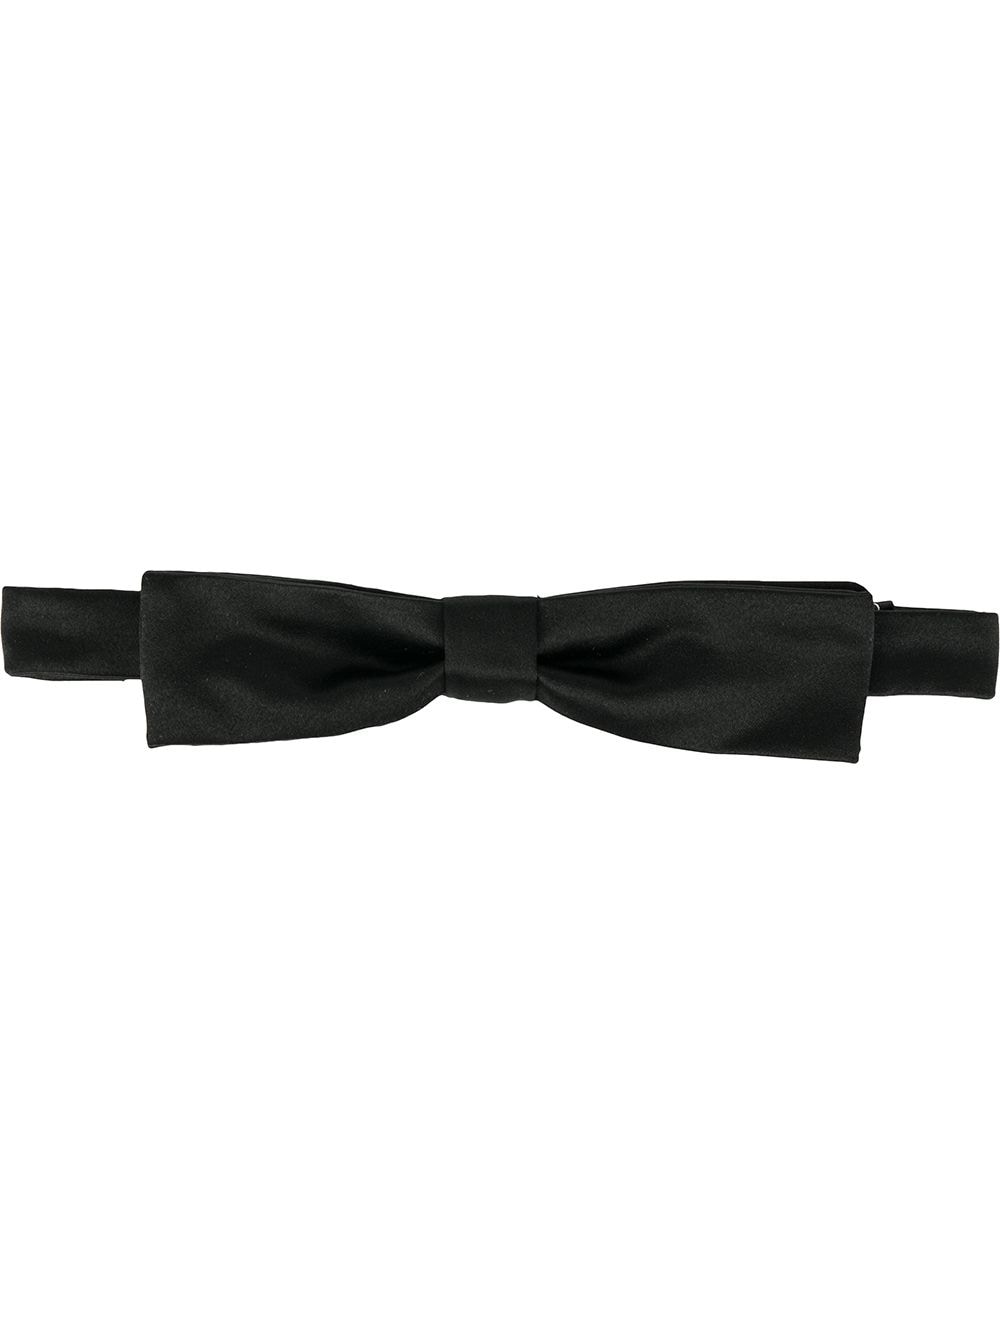 Dsquared2 thin bow tie - Black von Dsquared2